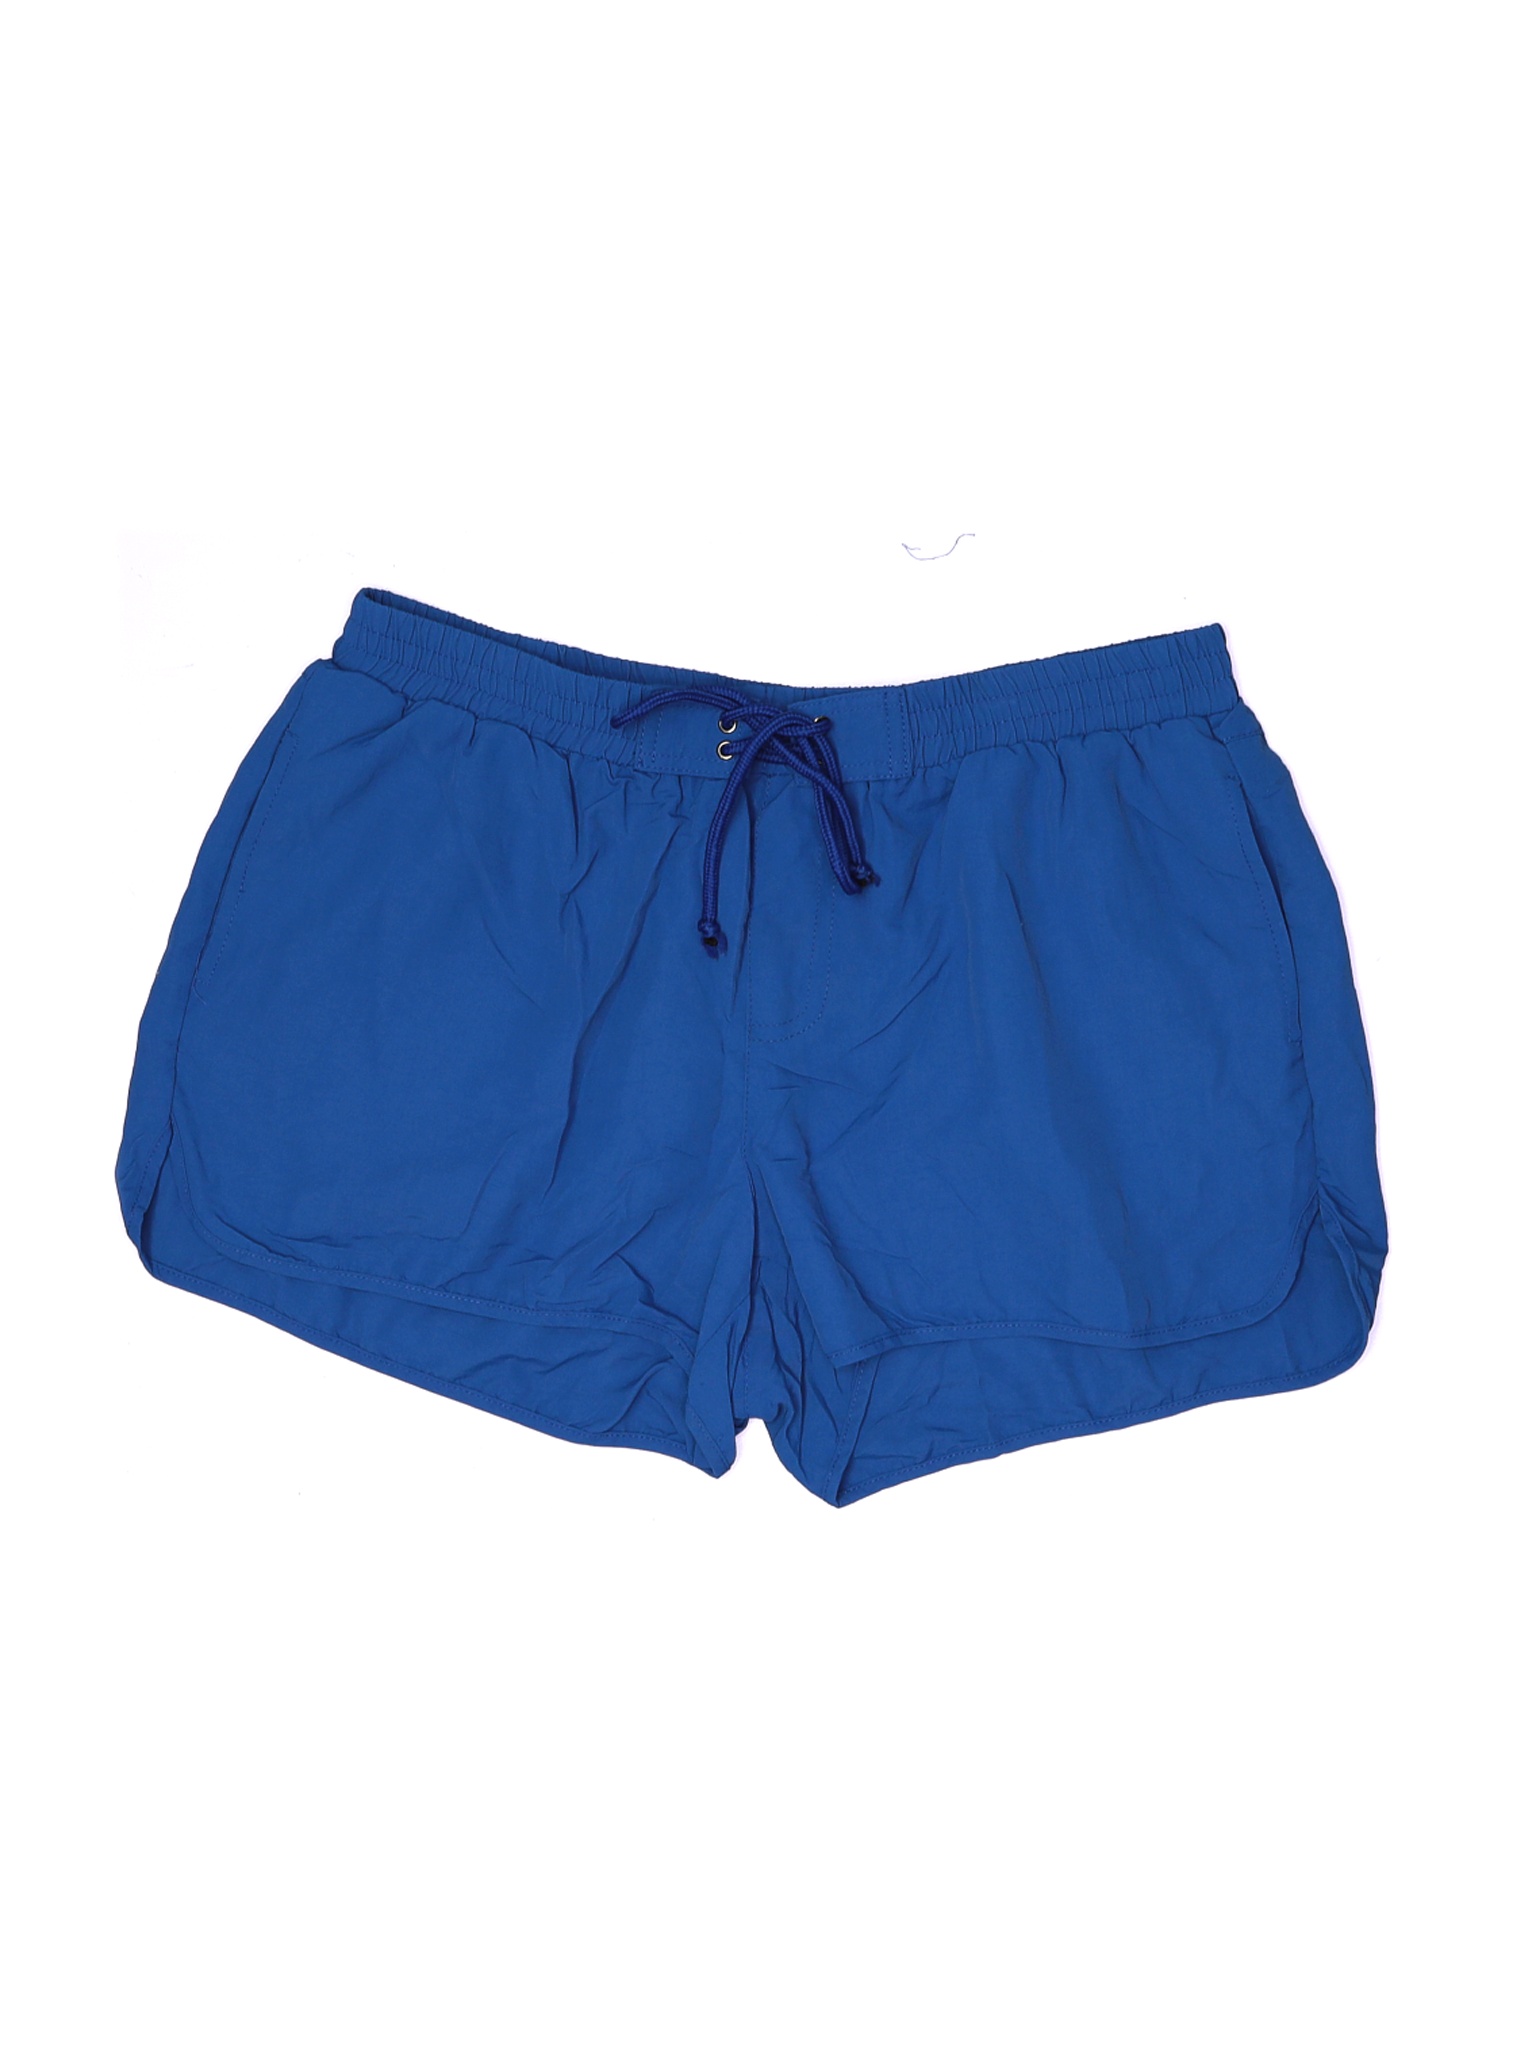 Assorted Brands Women Blue Board Shorts L | eBay